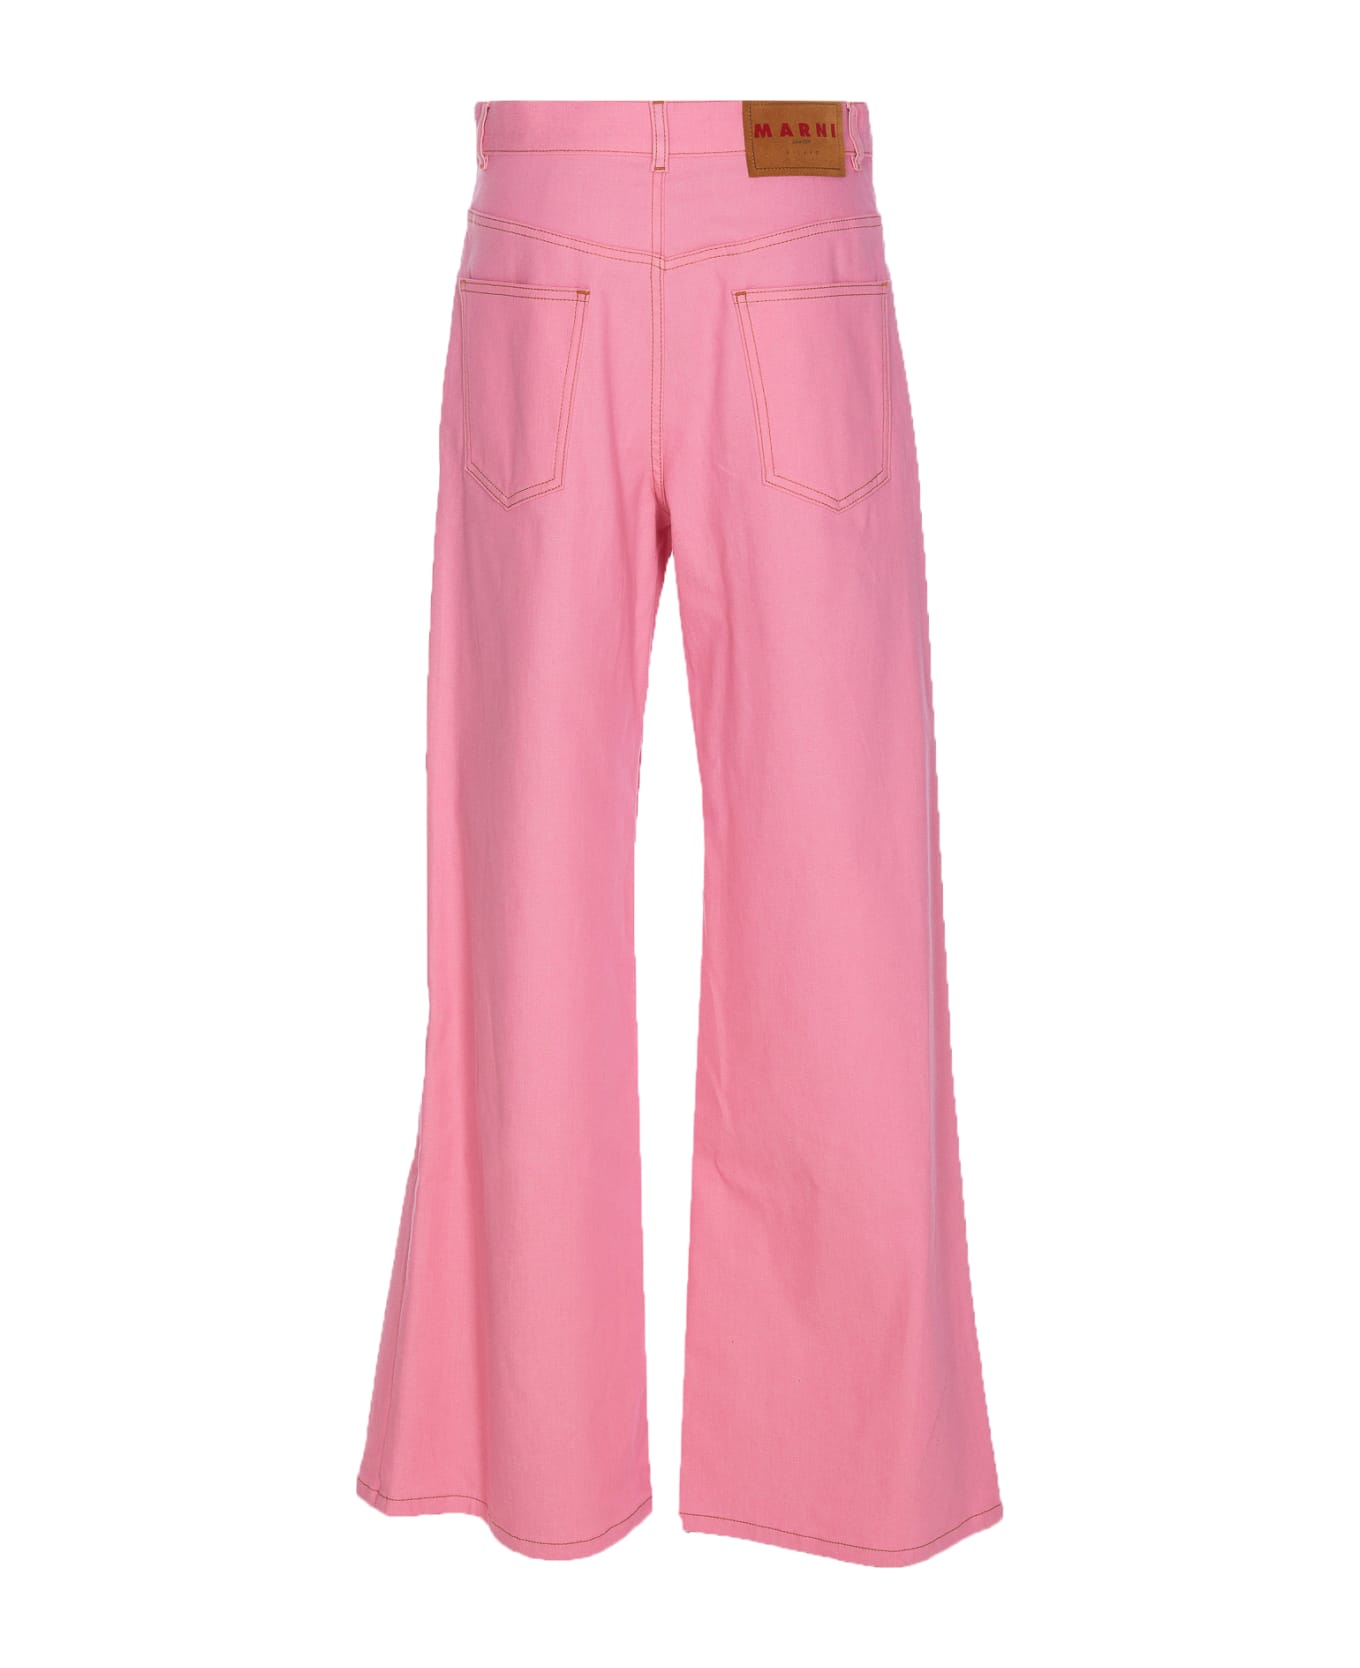 Marni Pants - Pink ボトムス